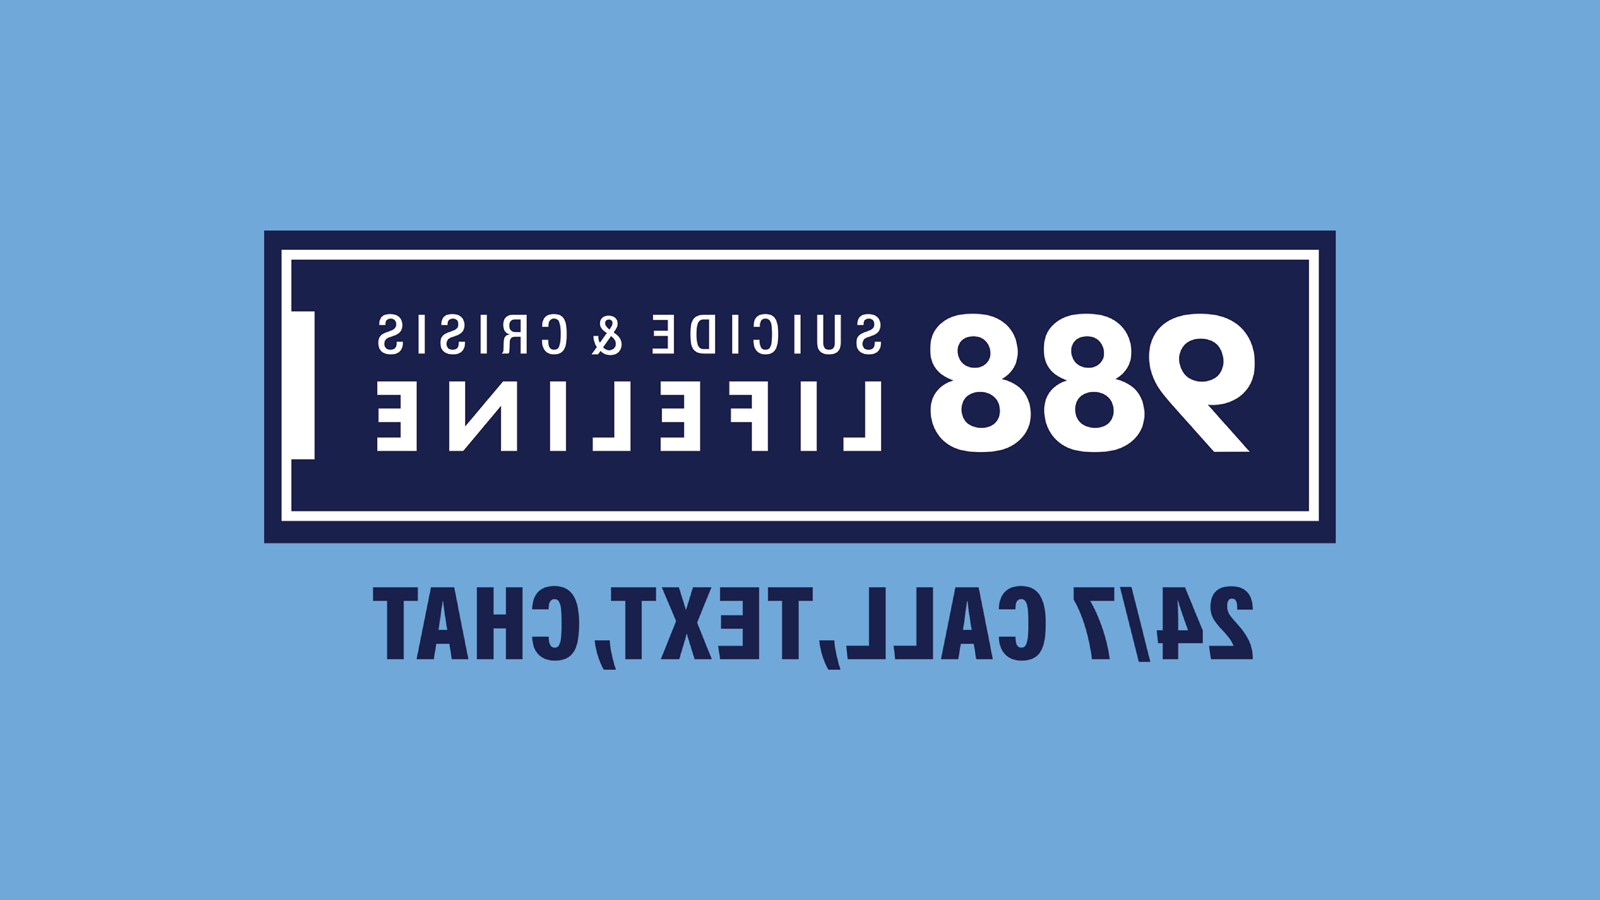 988自杀和危机救生索是用白色字体在一个藏蓝色矩形内，一个白色轮廓被一个藏蓝色轮廓包围. 24/呼叫，文本，聊天是在深蓝色字体下的矩形框. The background is a sky blue rectangle.